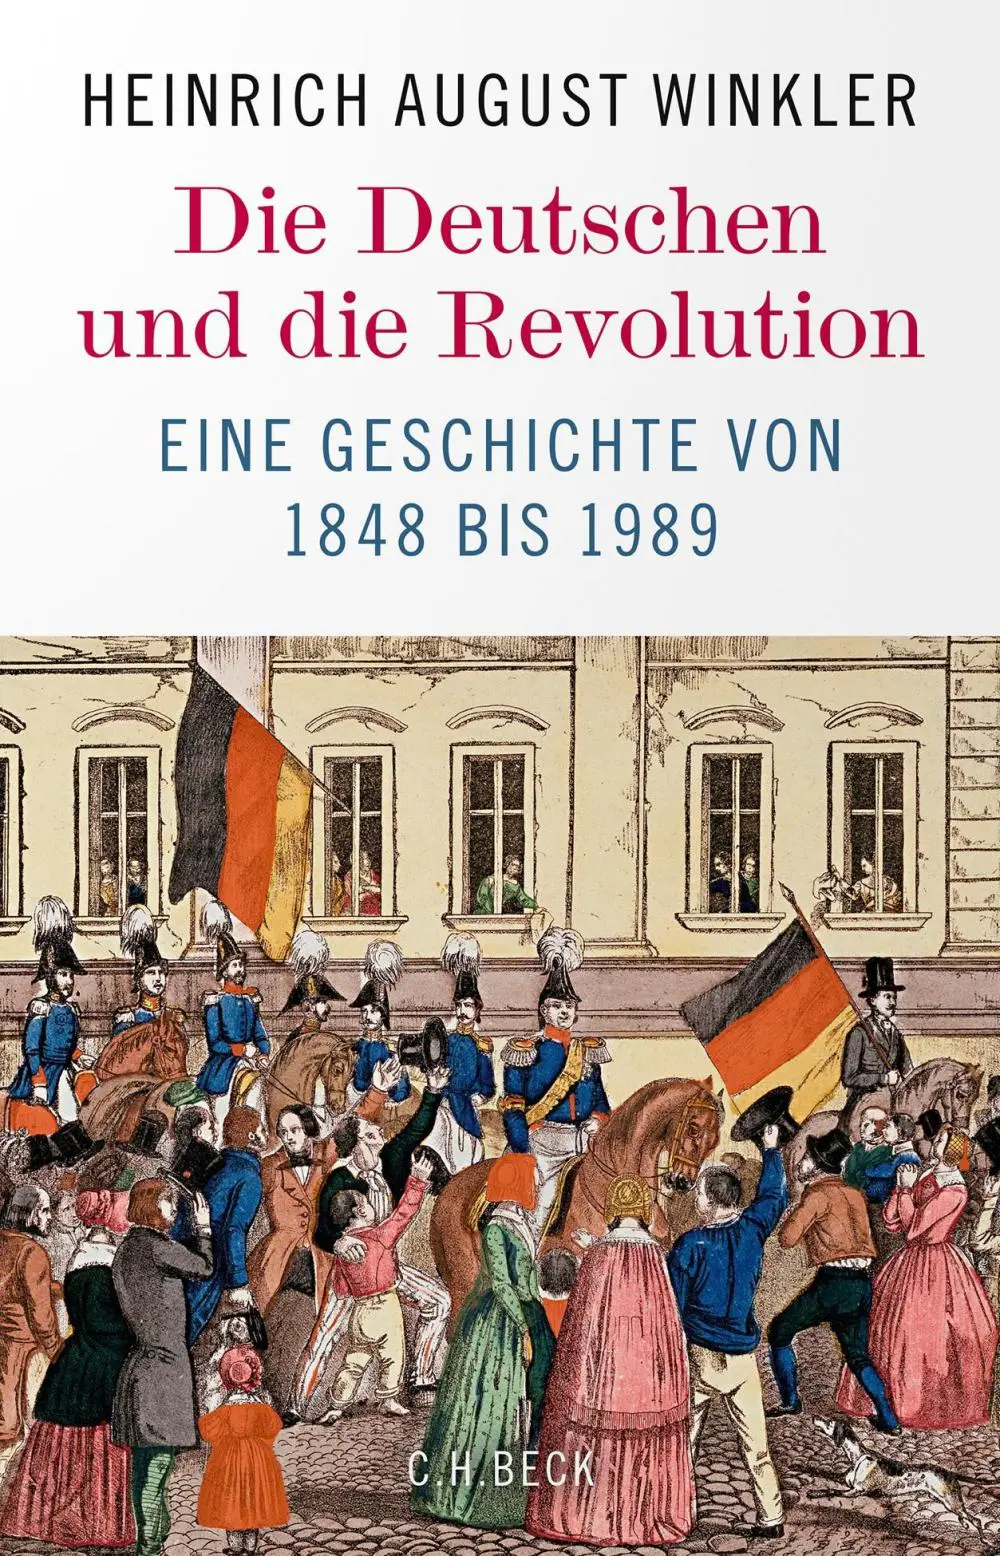 Buchcover des neuen Buches von Heinrich August Winkler 